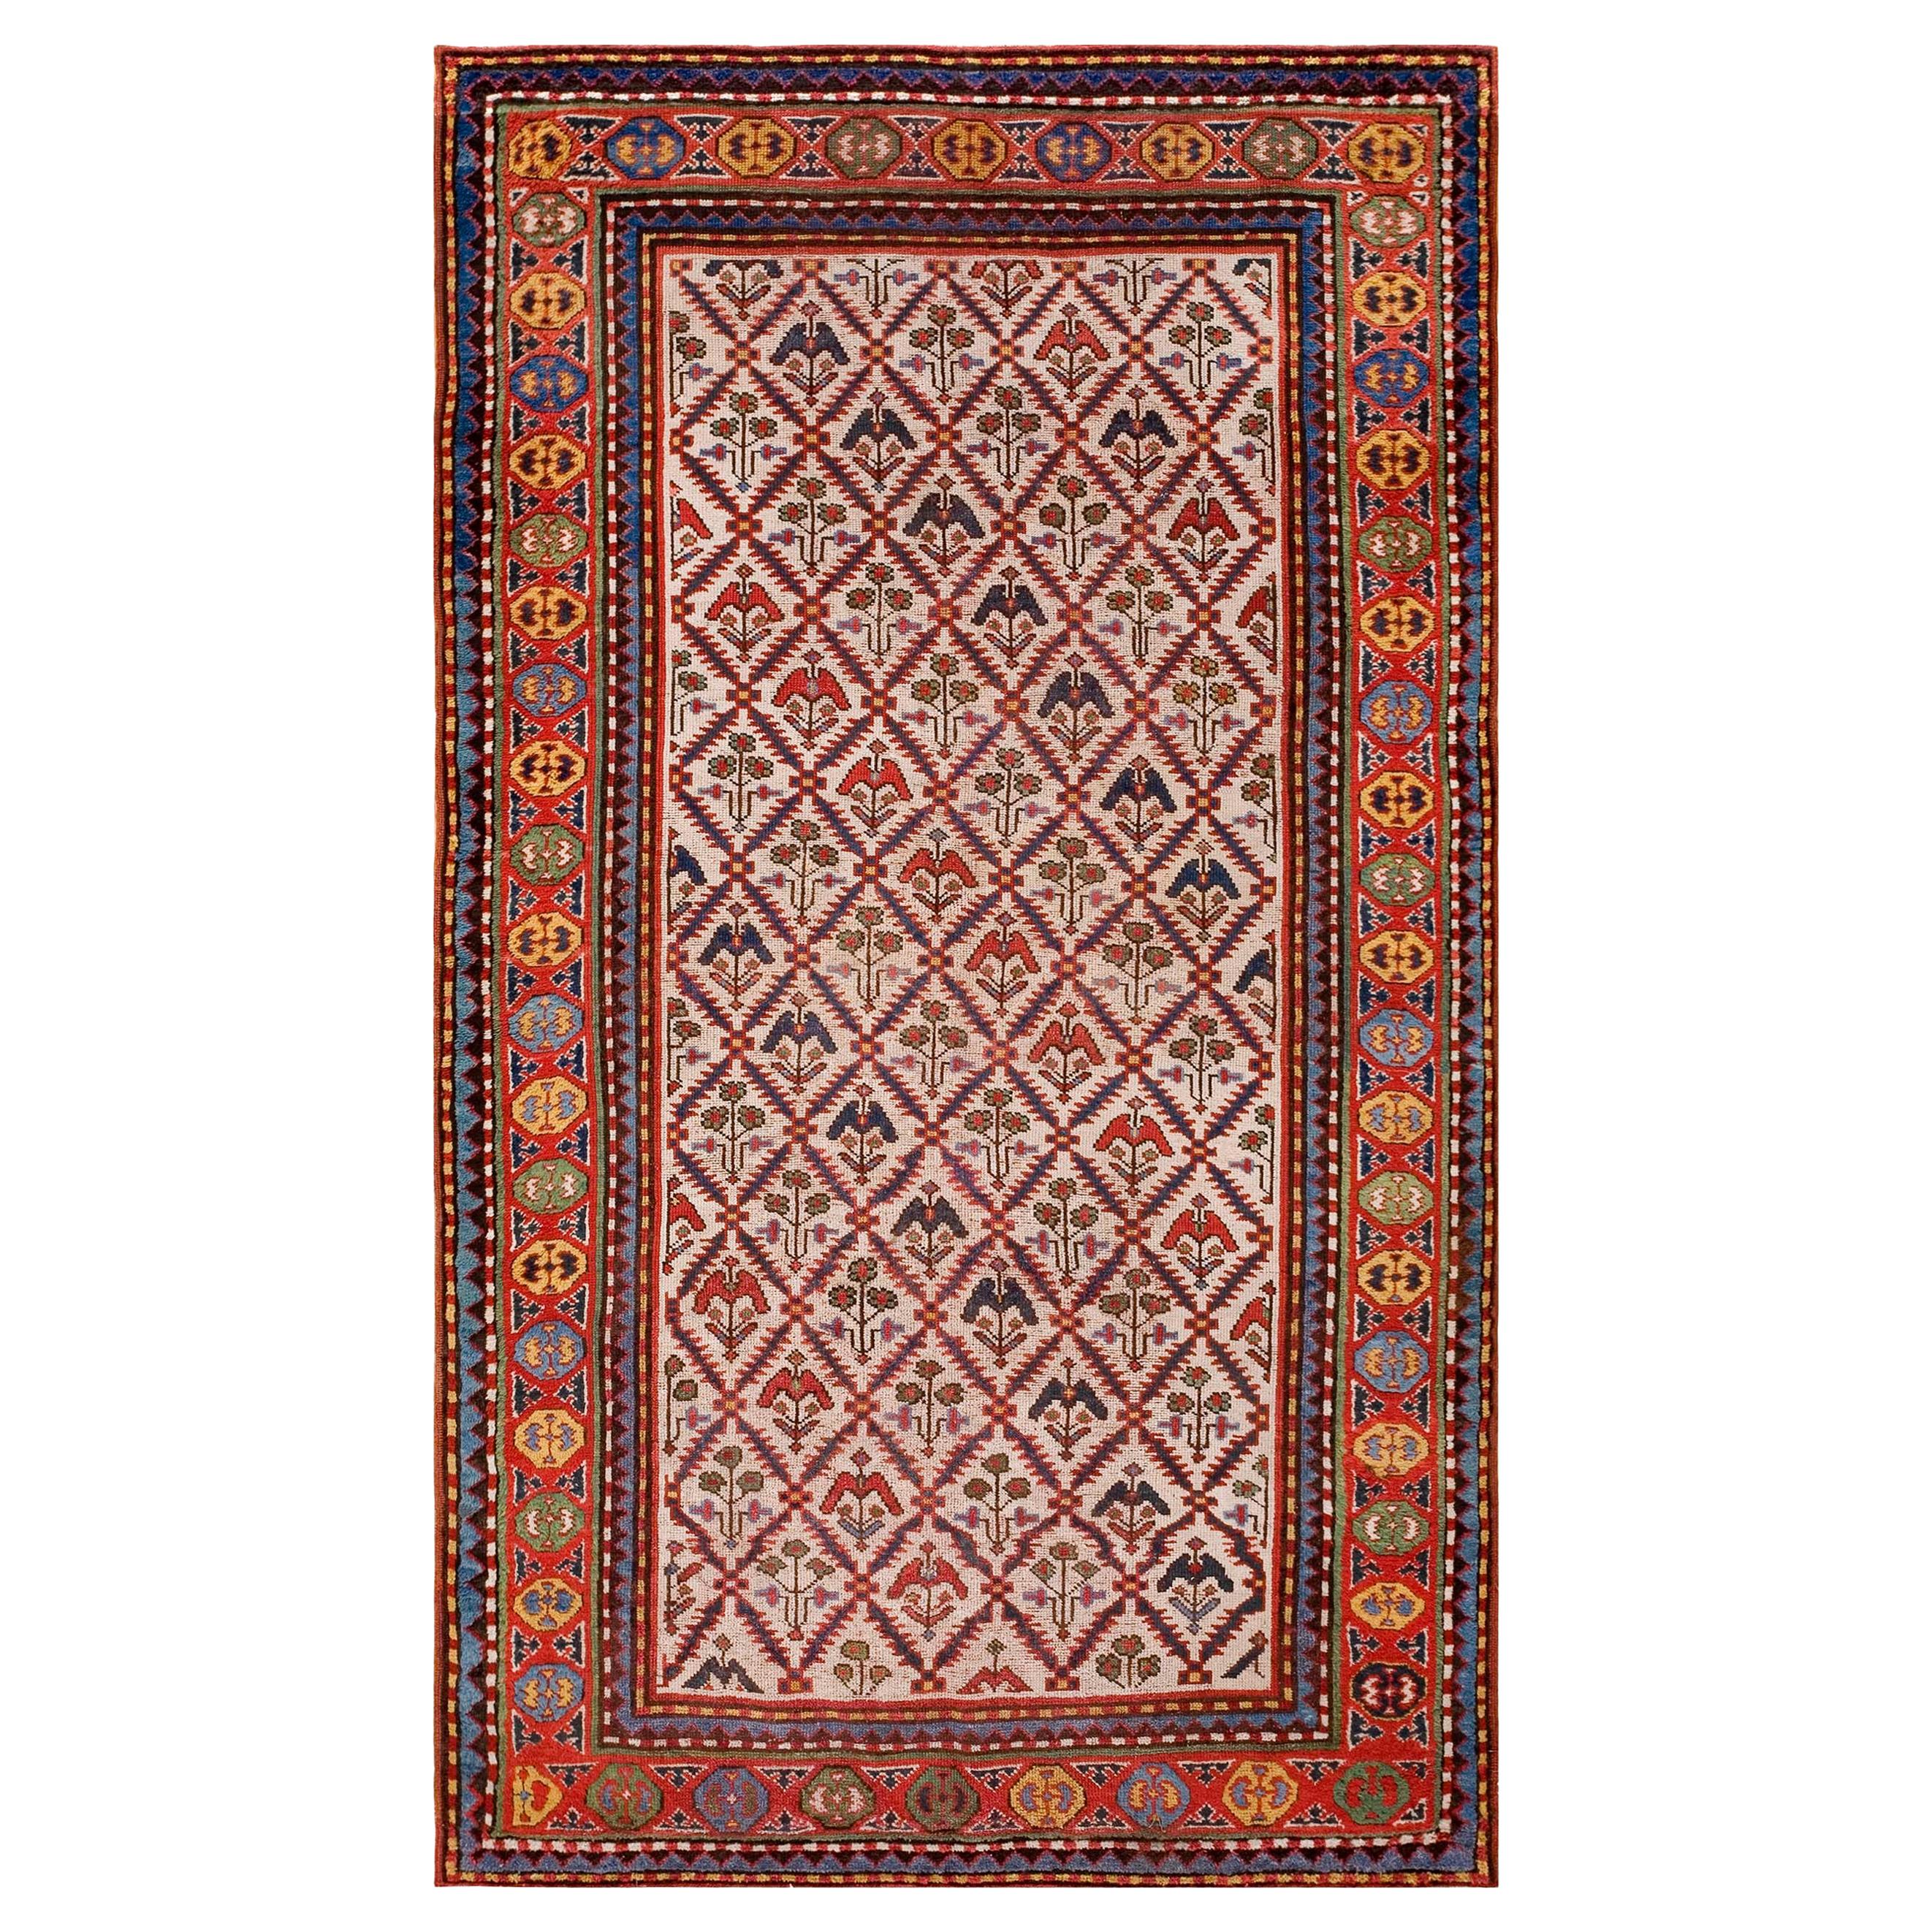 Kaukasischer Teppich des späten 19. Jahrhunderts ( 4'8" X 8' 142 x 244")